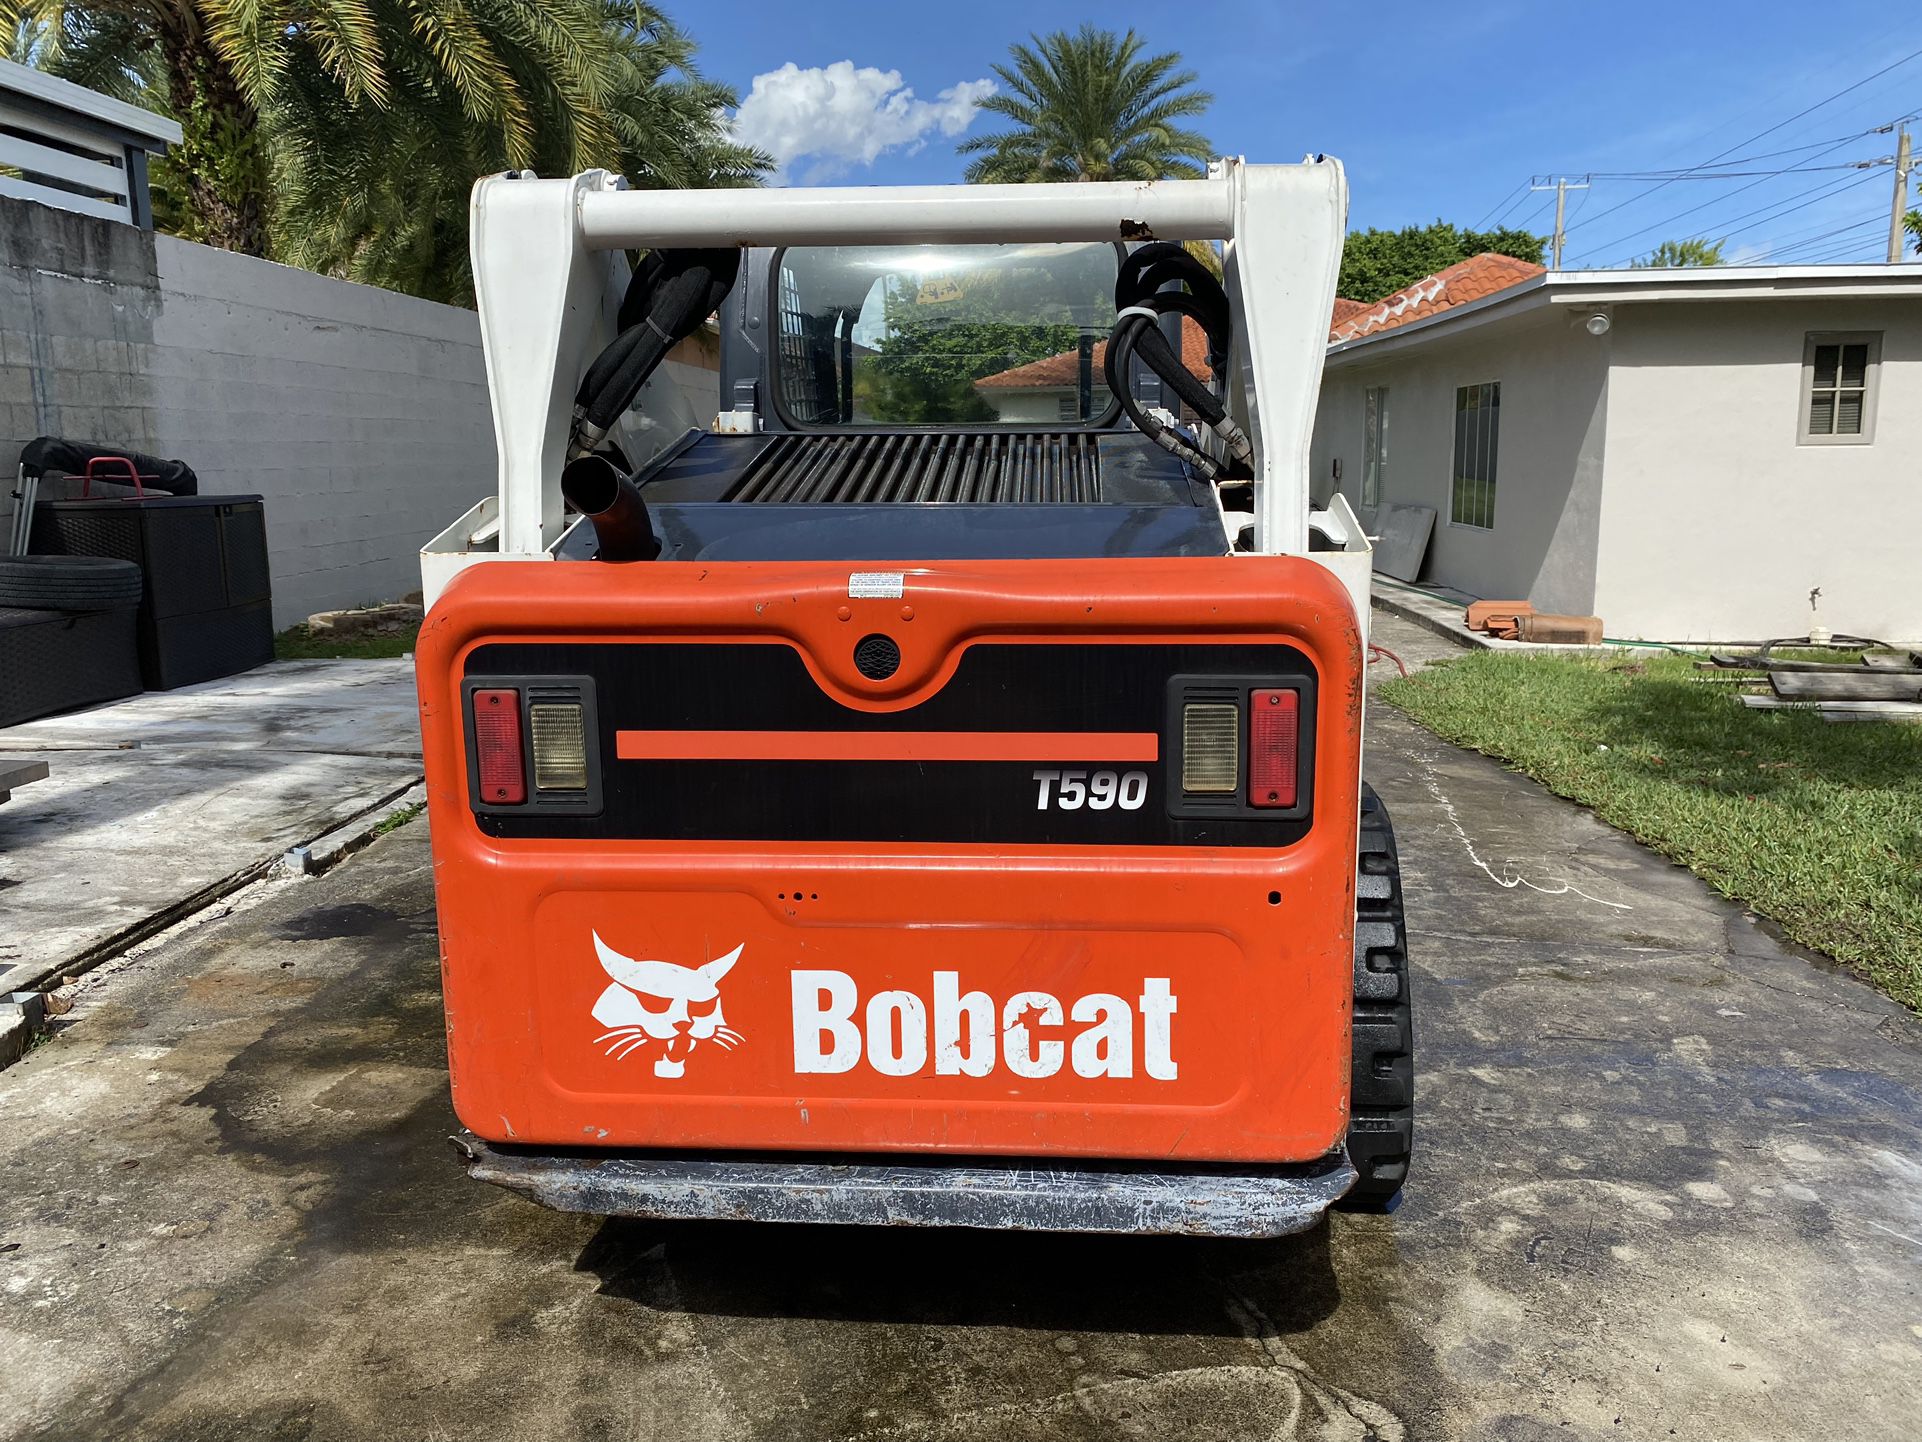 Bobcat T590